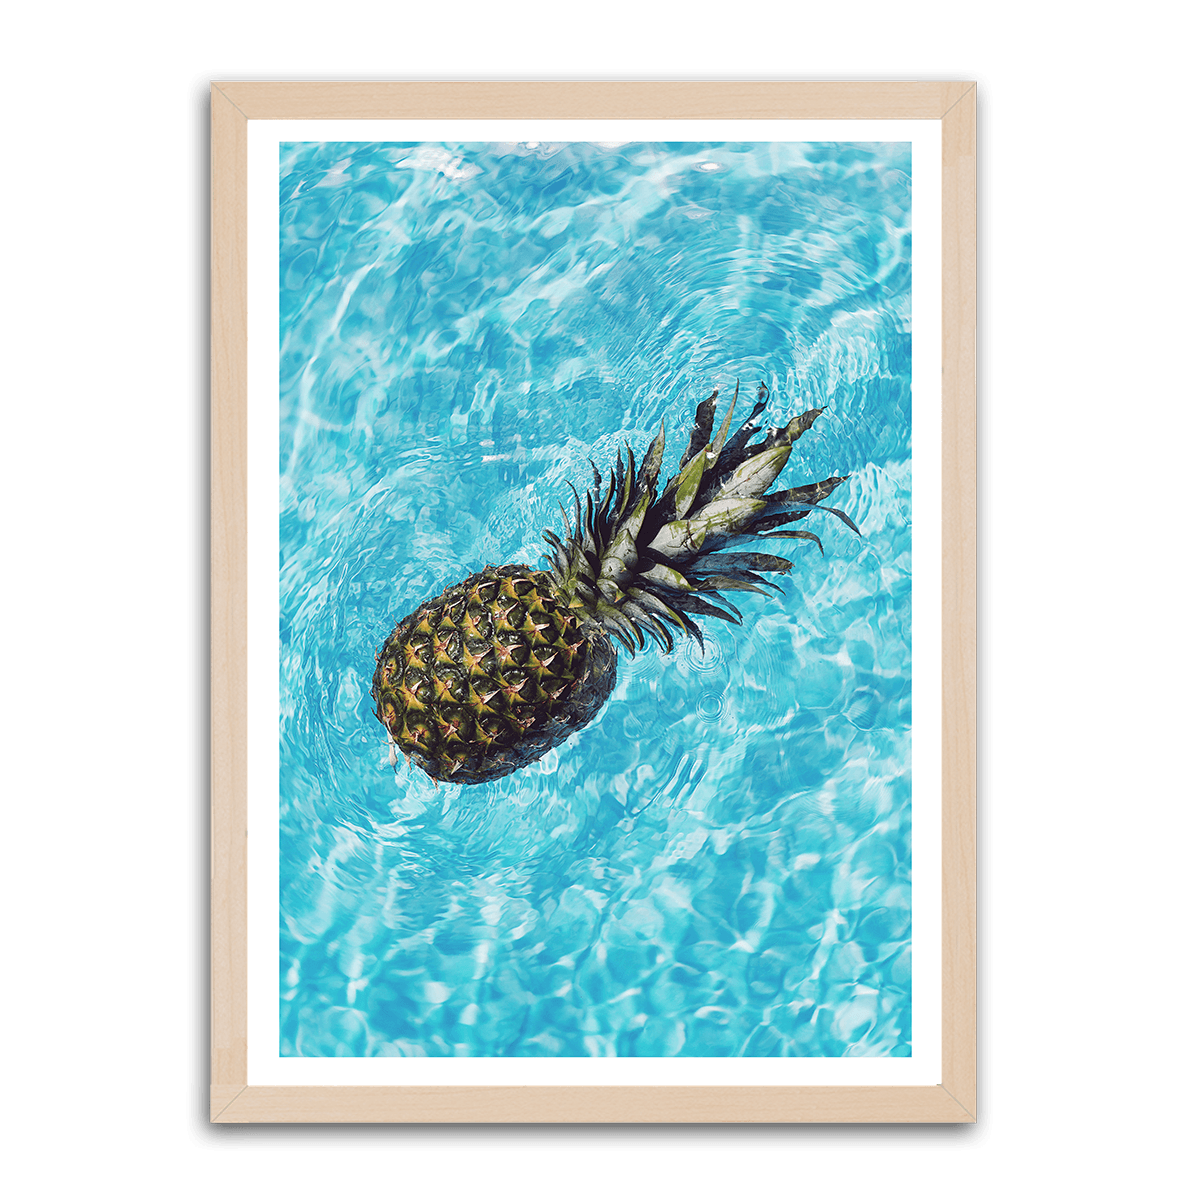 Aquatic Pineapple Drift - PixMagic